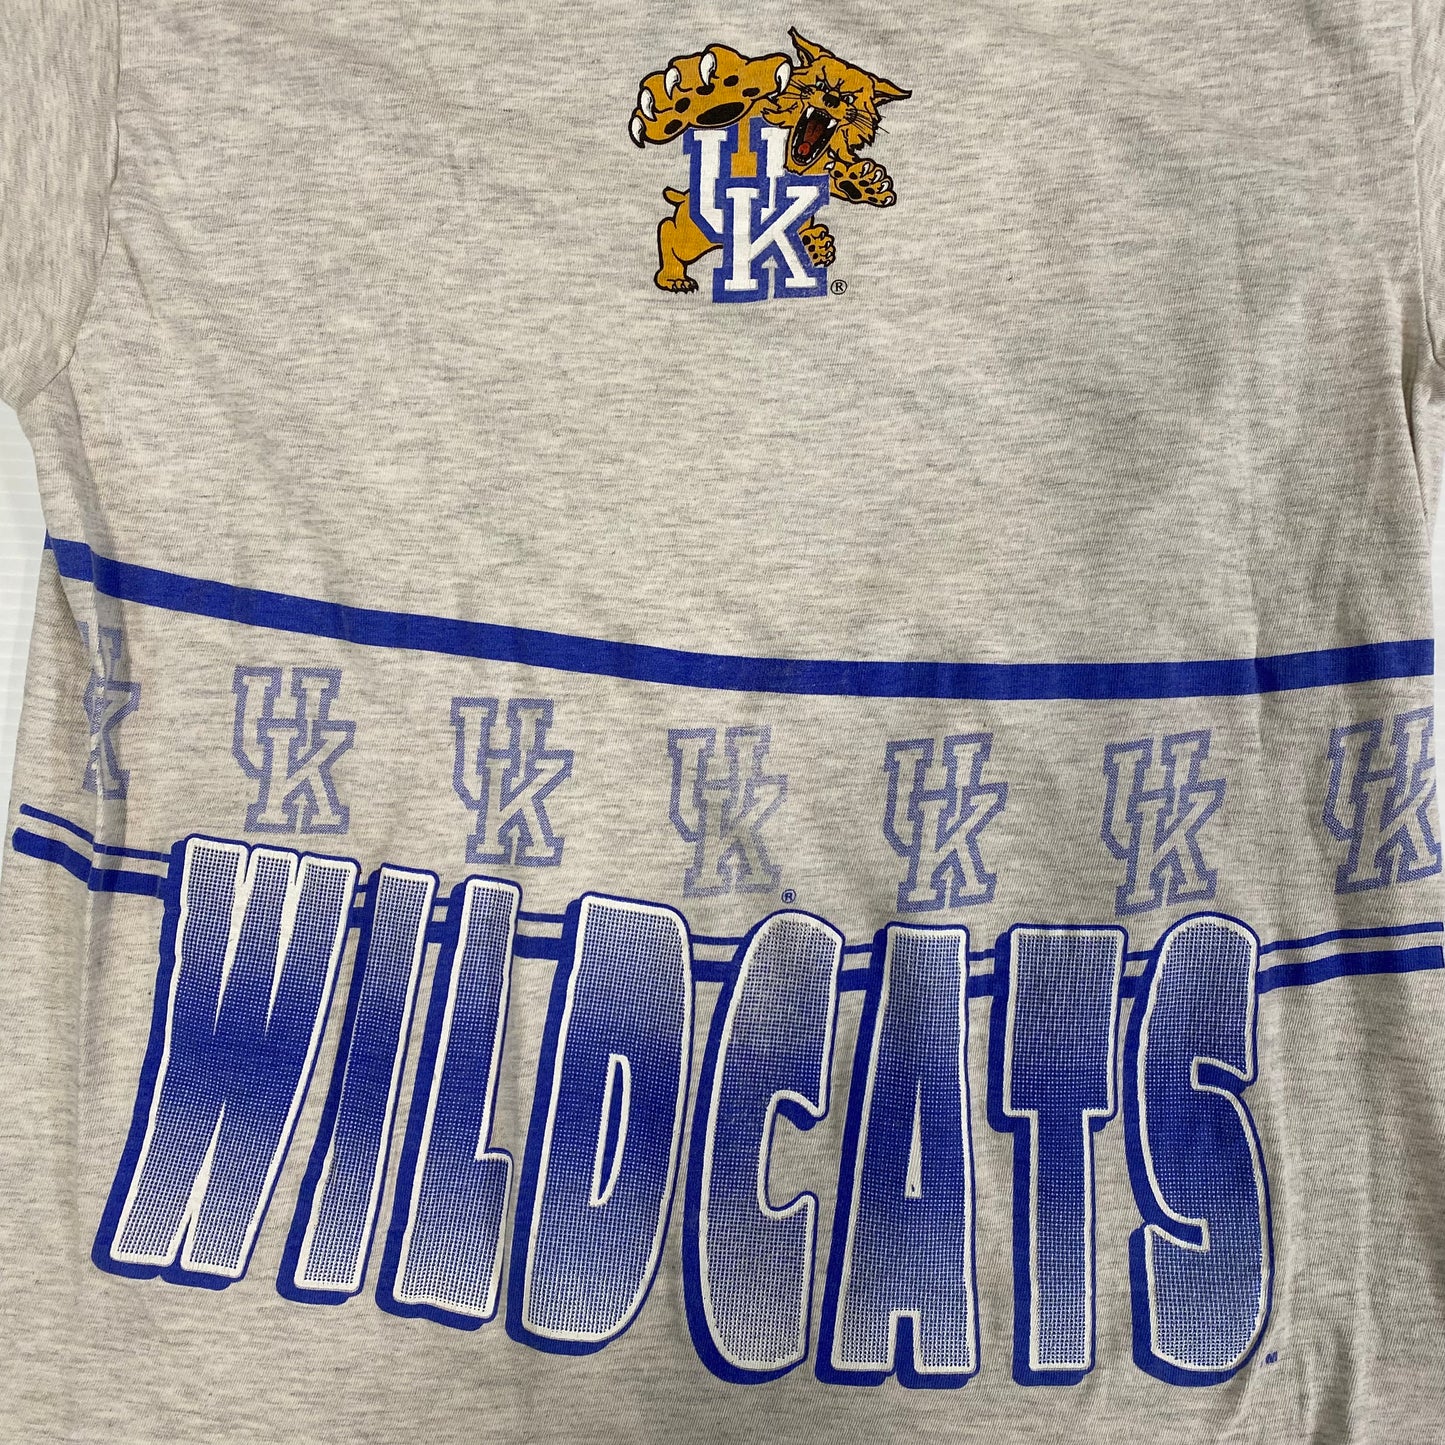 90’s Kentucky Wildcats T-shirt Sz L (L672)